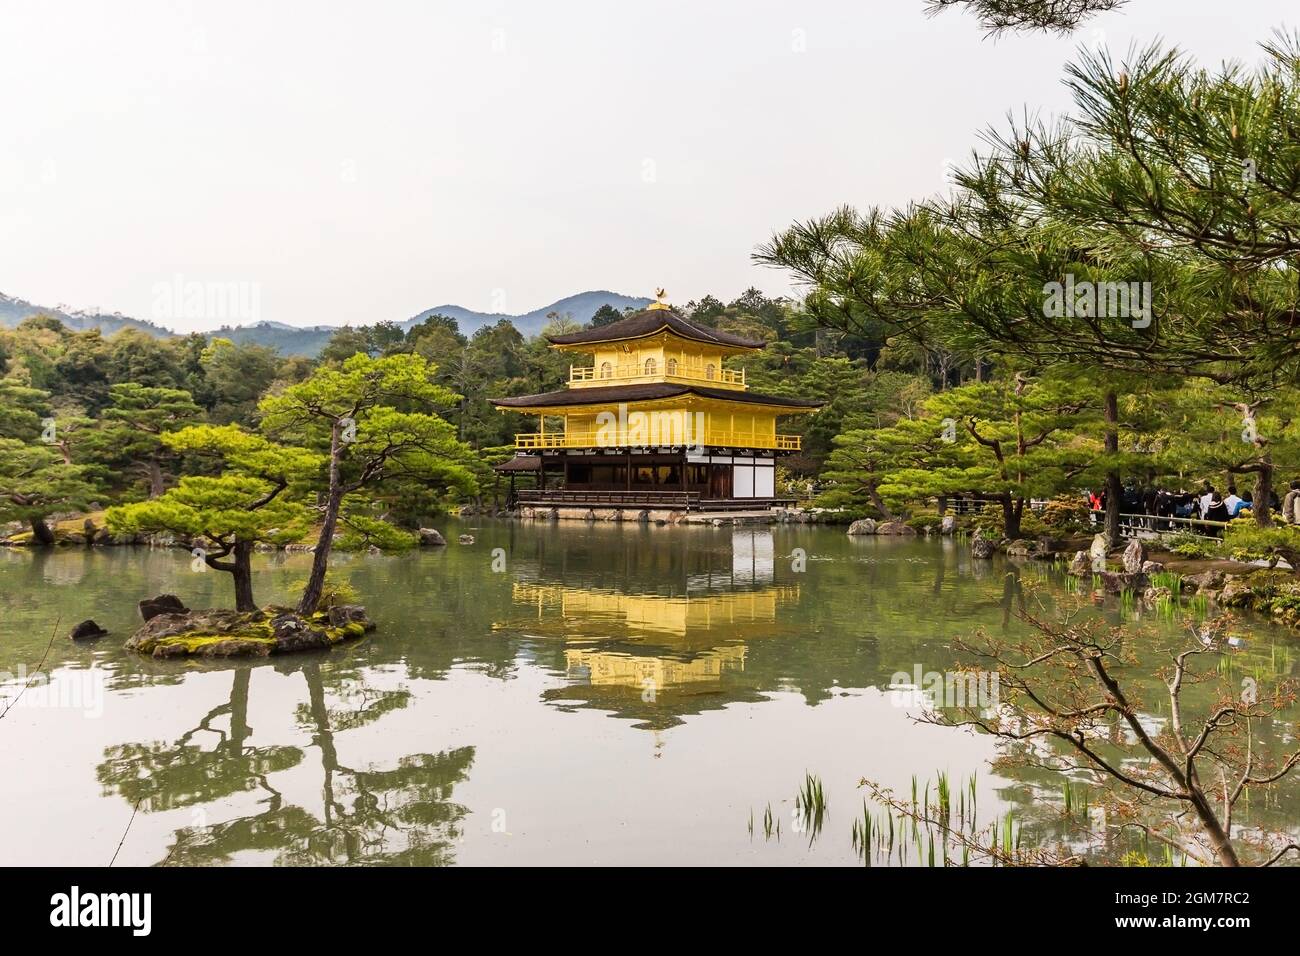 Belle architecture au temple de Kinkakuji (le Pavillon d'or) à Kyoto, Pavillon d'or au temple de Kinkakuji à Kyoto, Japon Banque D'Images